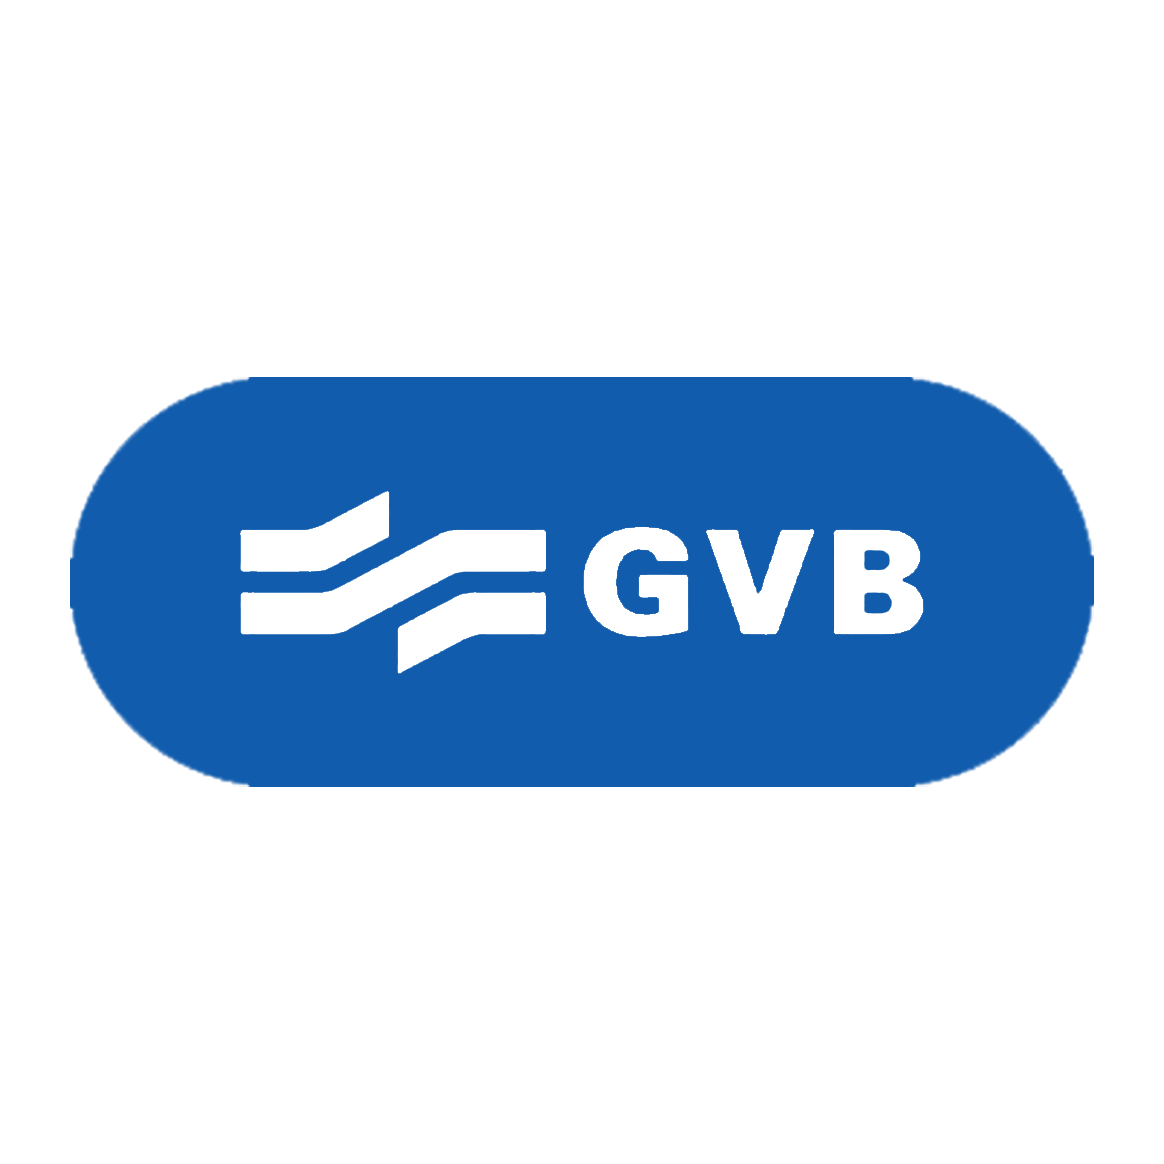 GVB logo